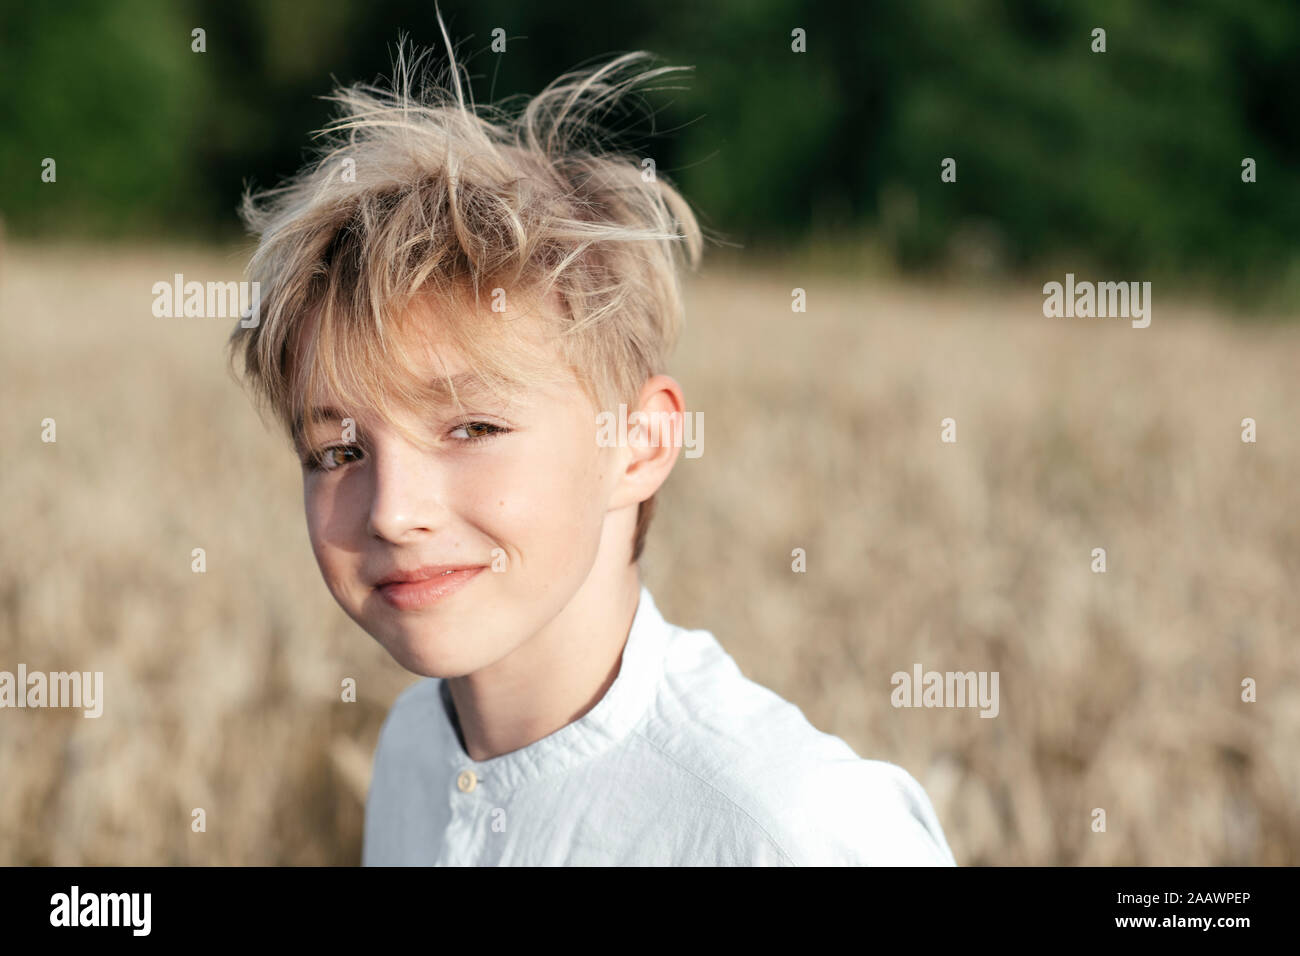 Portrait of smiling blond boy in an oat field Stock Photo